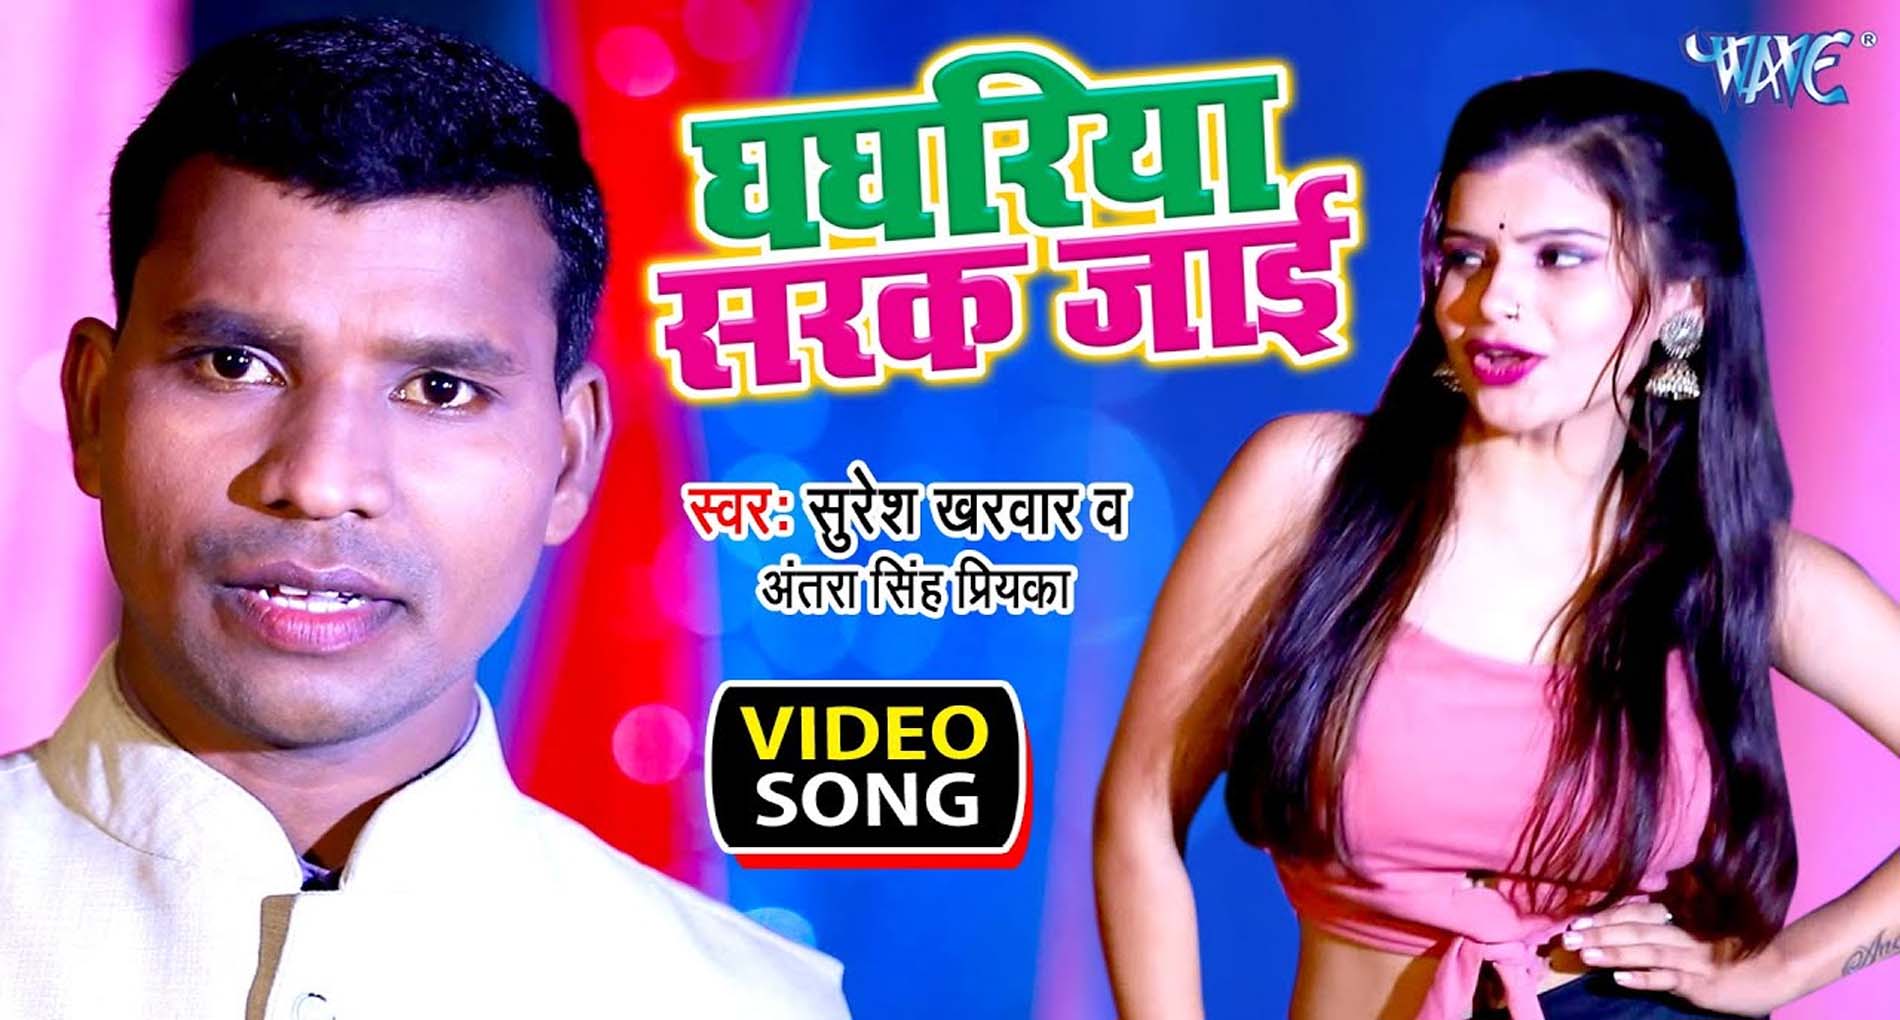 Bhojpuri Hit Song: अंतरा सिंह प्रियंका के इस नए गाने ने मचाया धमाल! देखें वीडियो